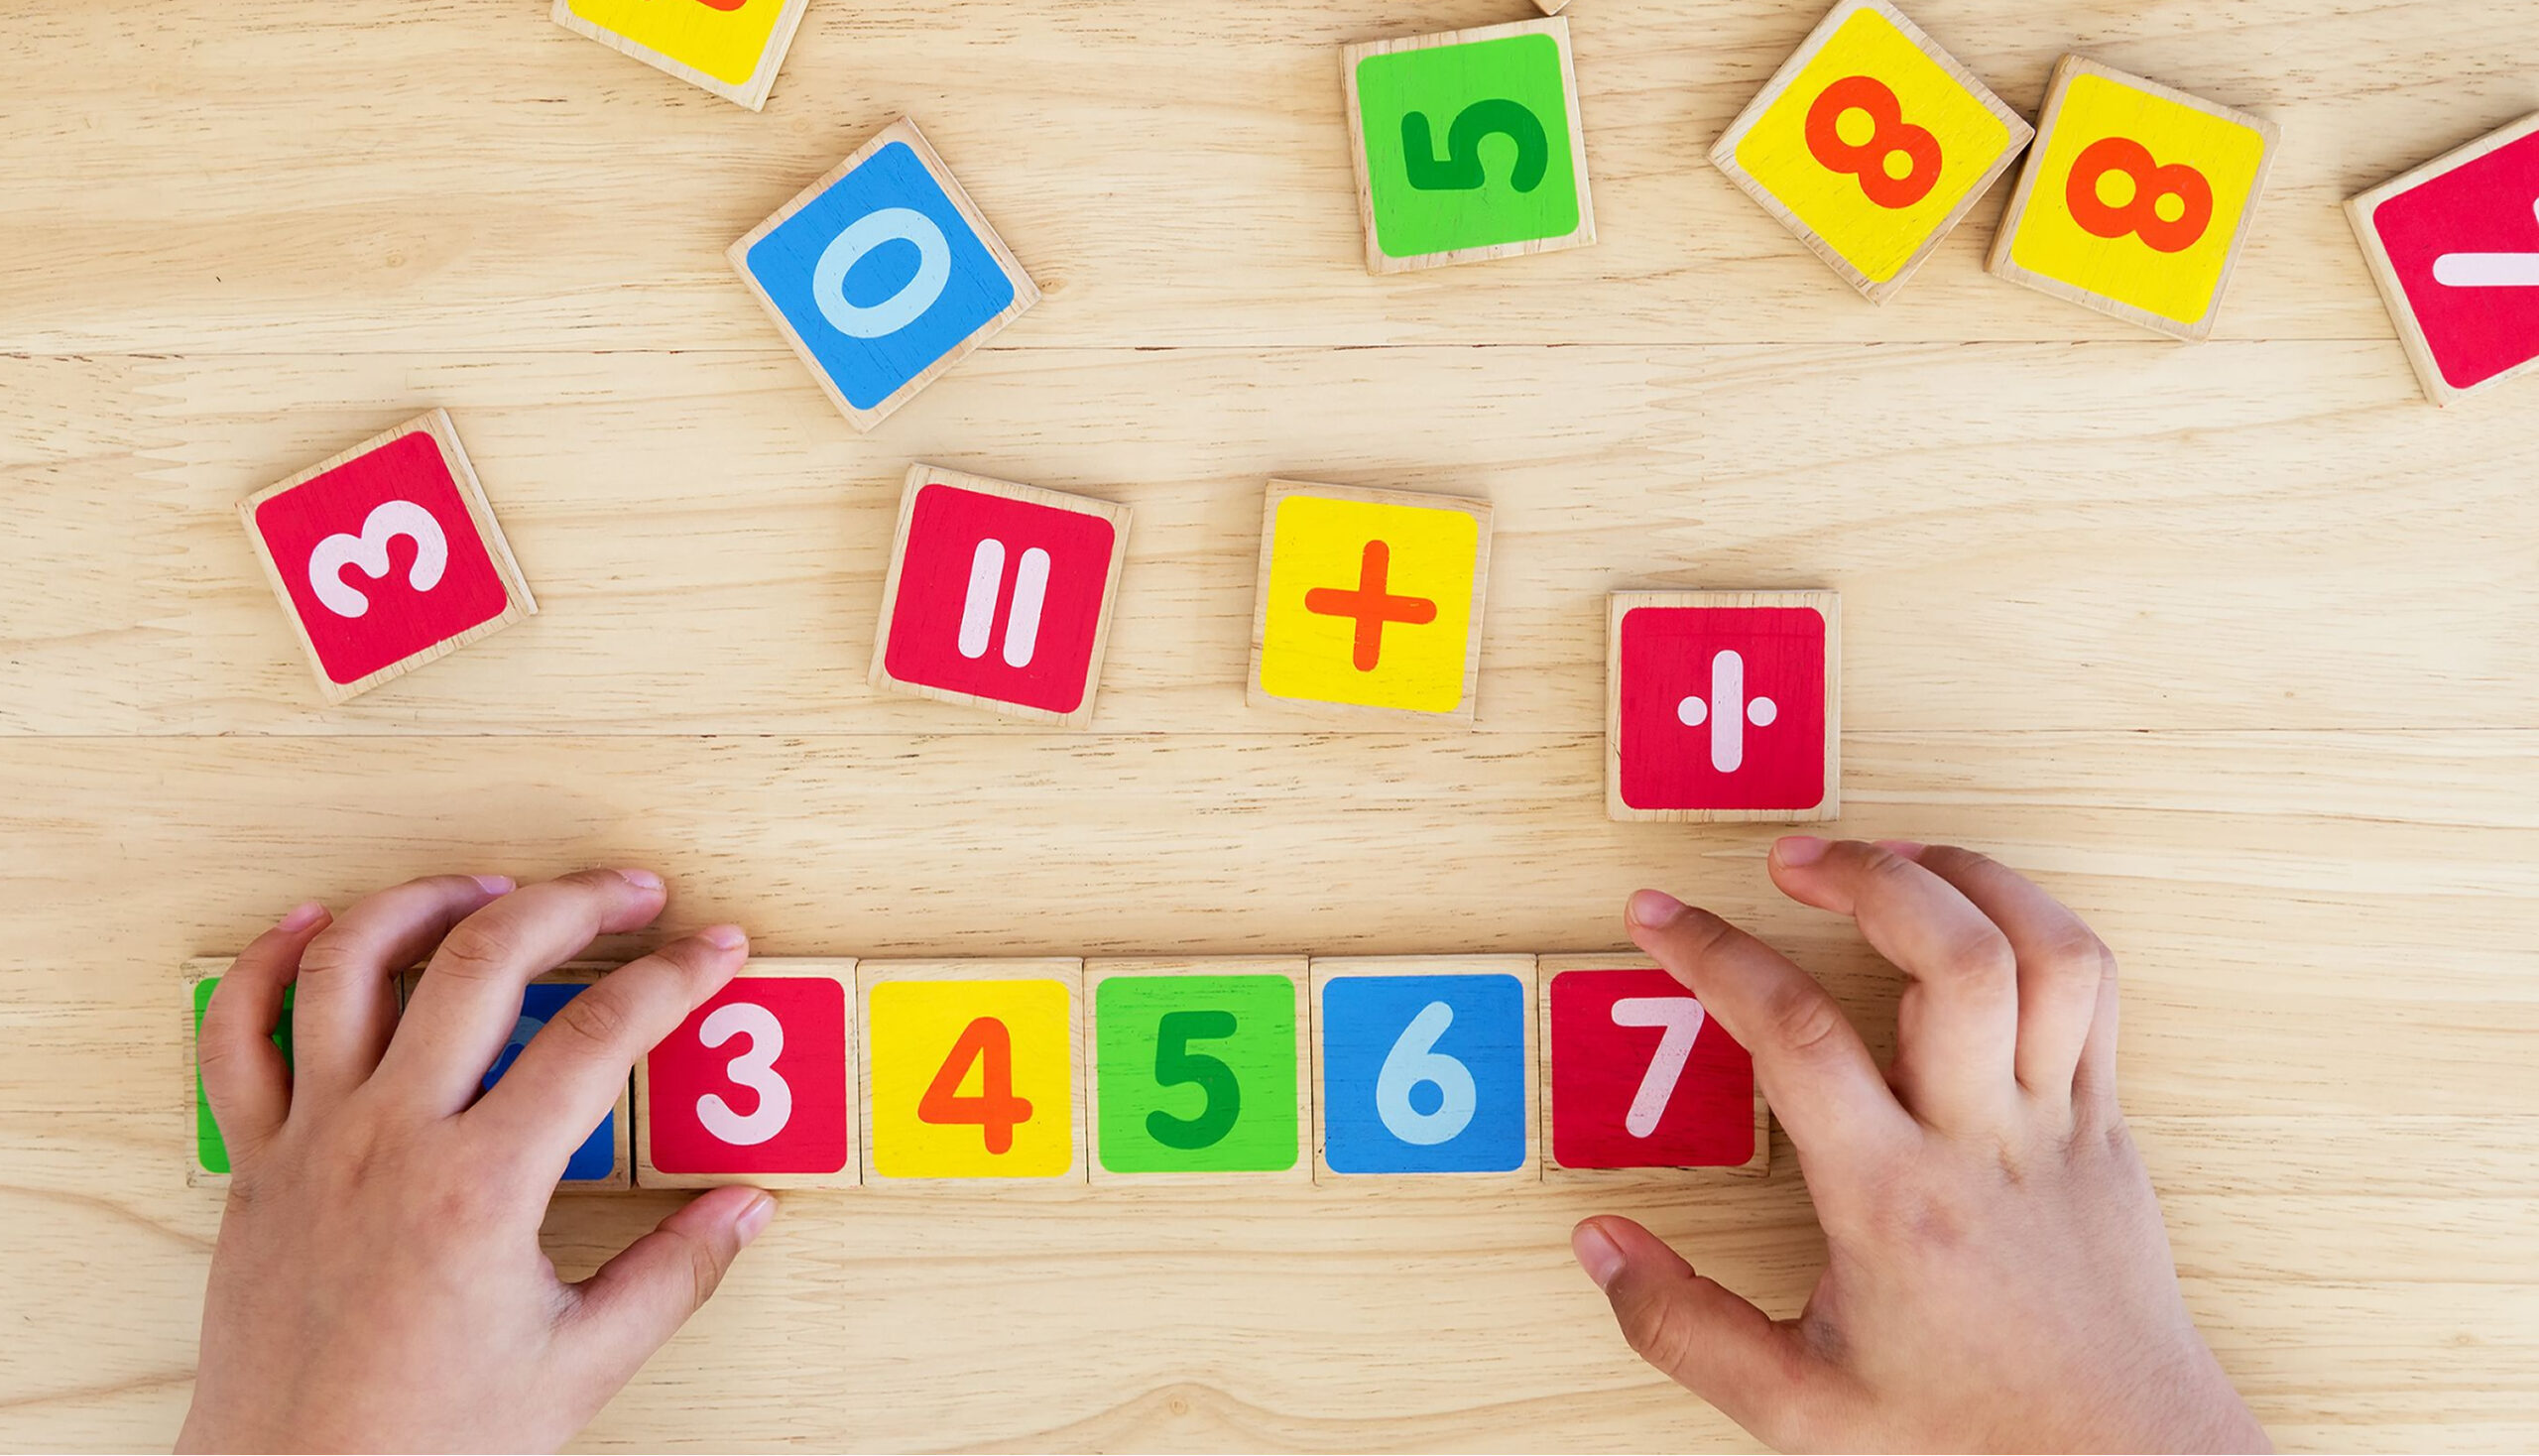 Hands-On Math Activities for Preschoolers To Second Graders